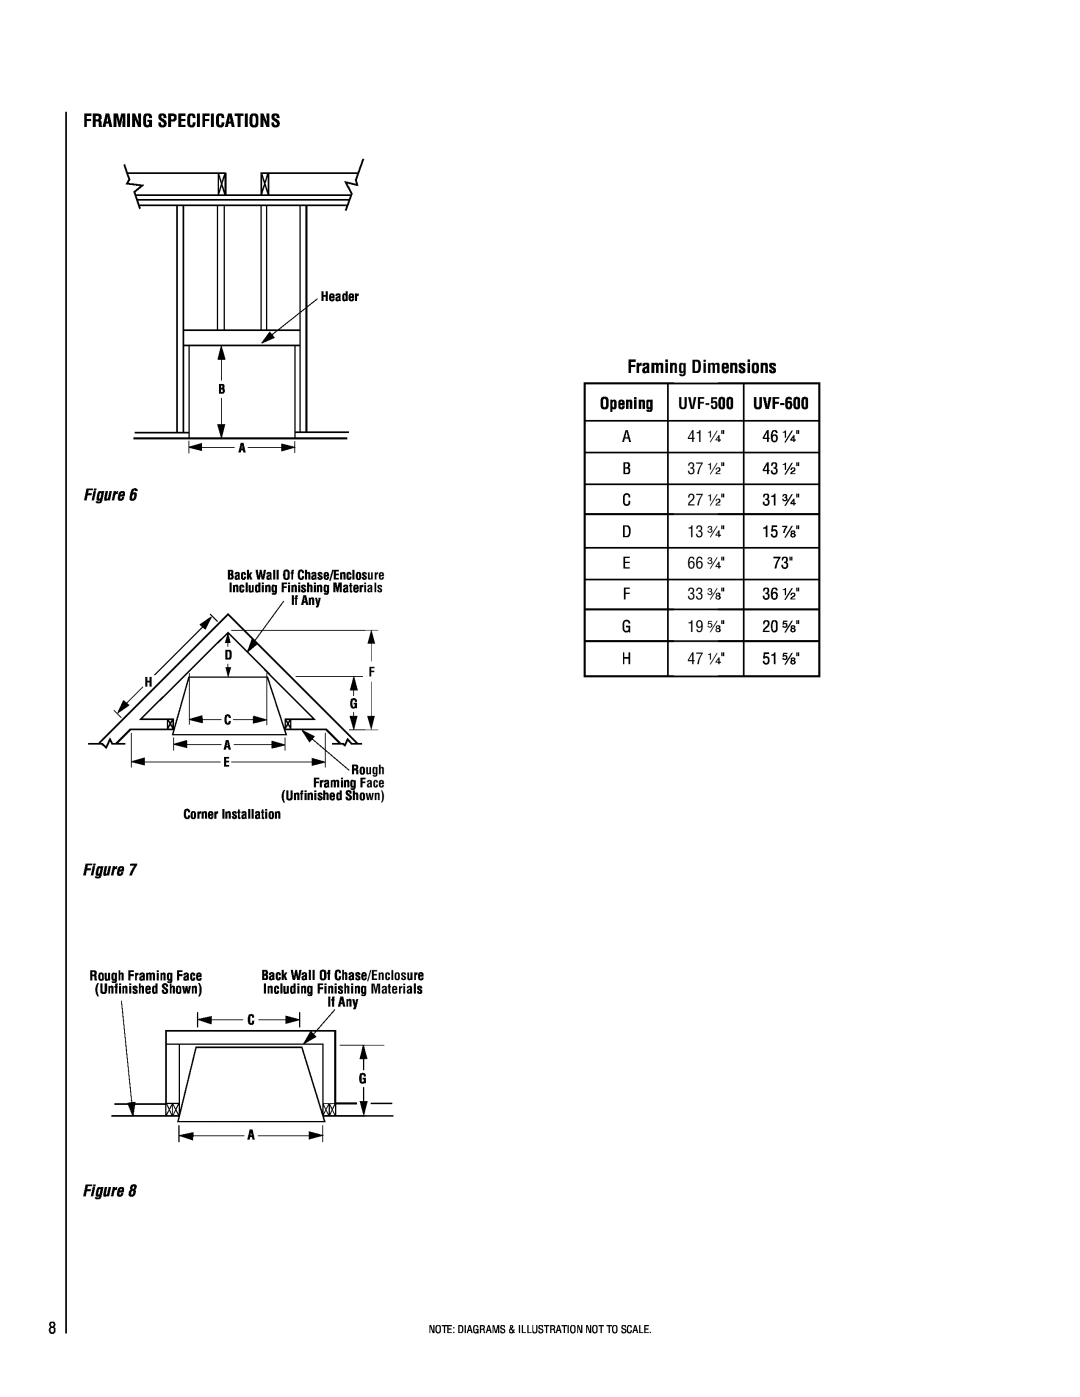 Superior UVFR-600, UVFC-600, UVFC-500, UVFR-500 installation instructions Framing Specifications, Framing Dimensions 